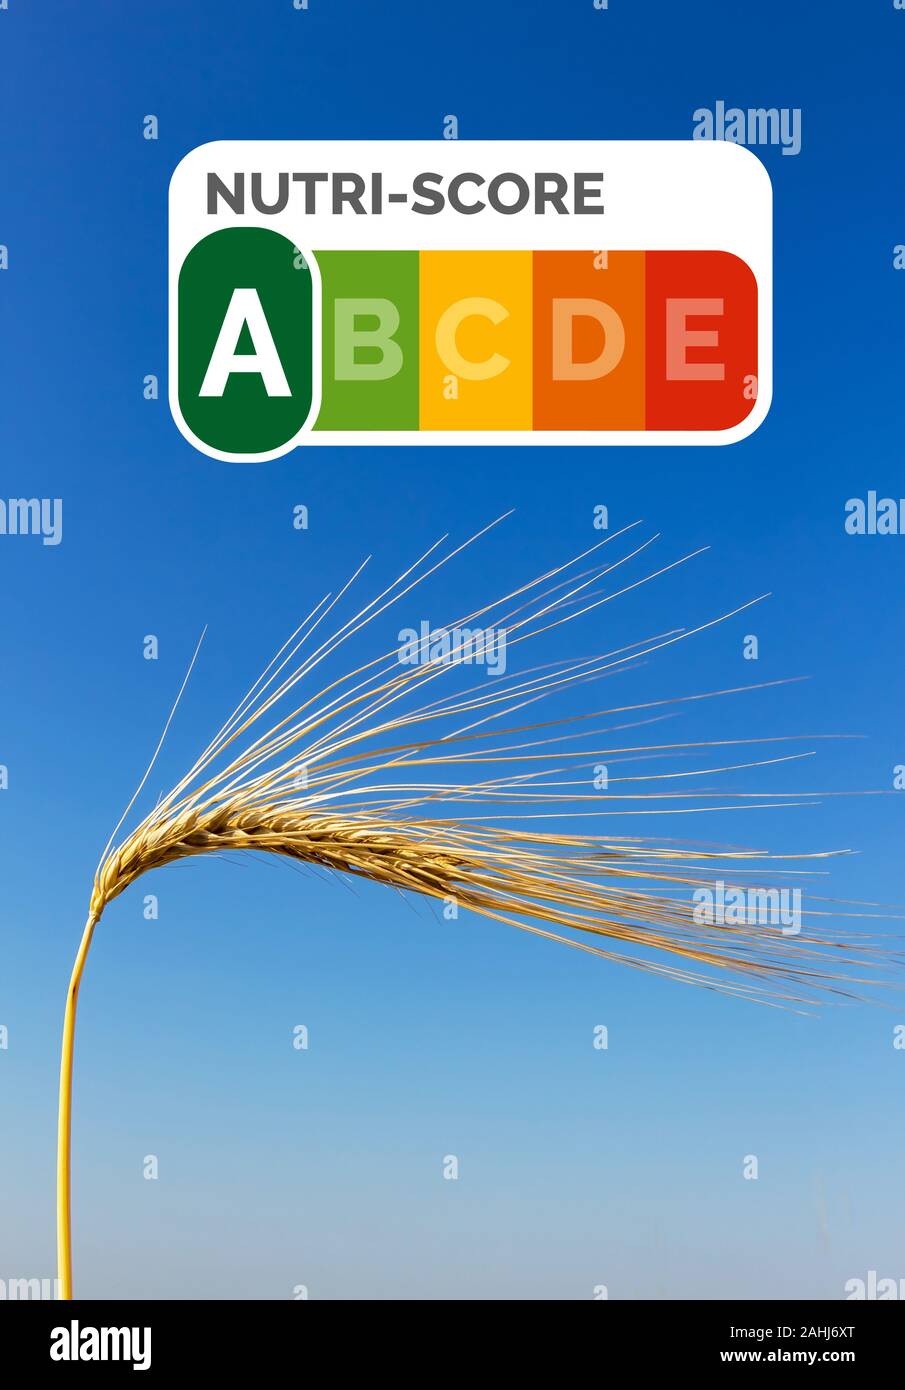 Ein Getreidefeld mit Gerste wartet auf die Ernte. Symbolfoto für Landwirtschaft und gesunde Ernährung. Einzelne Ähre, blauer Himmel, Nutri-Score assedio Foto Stock